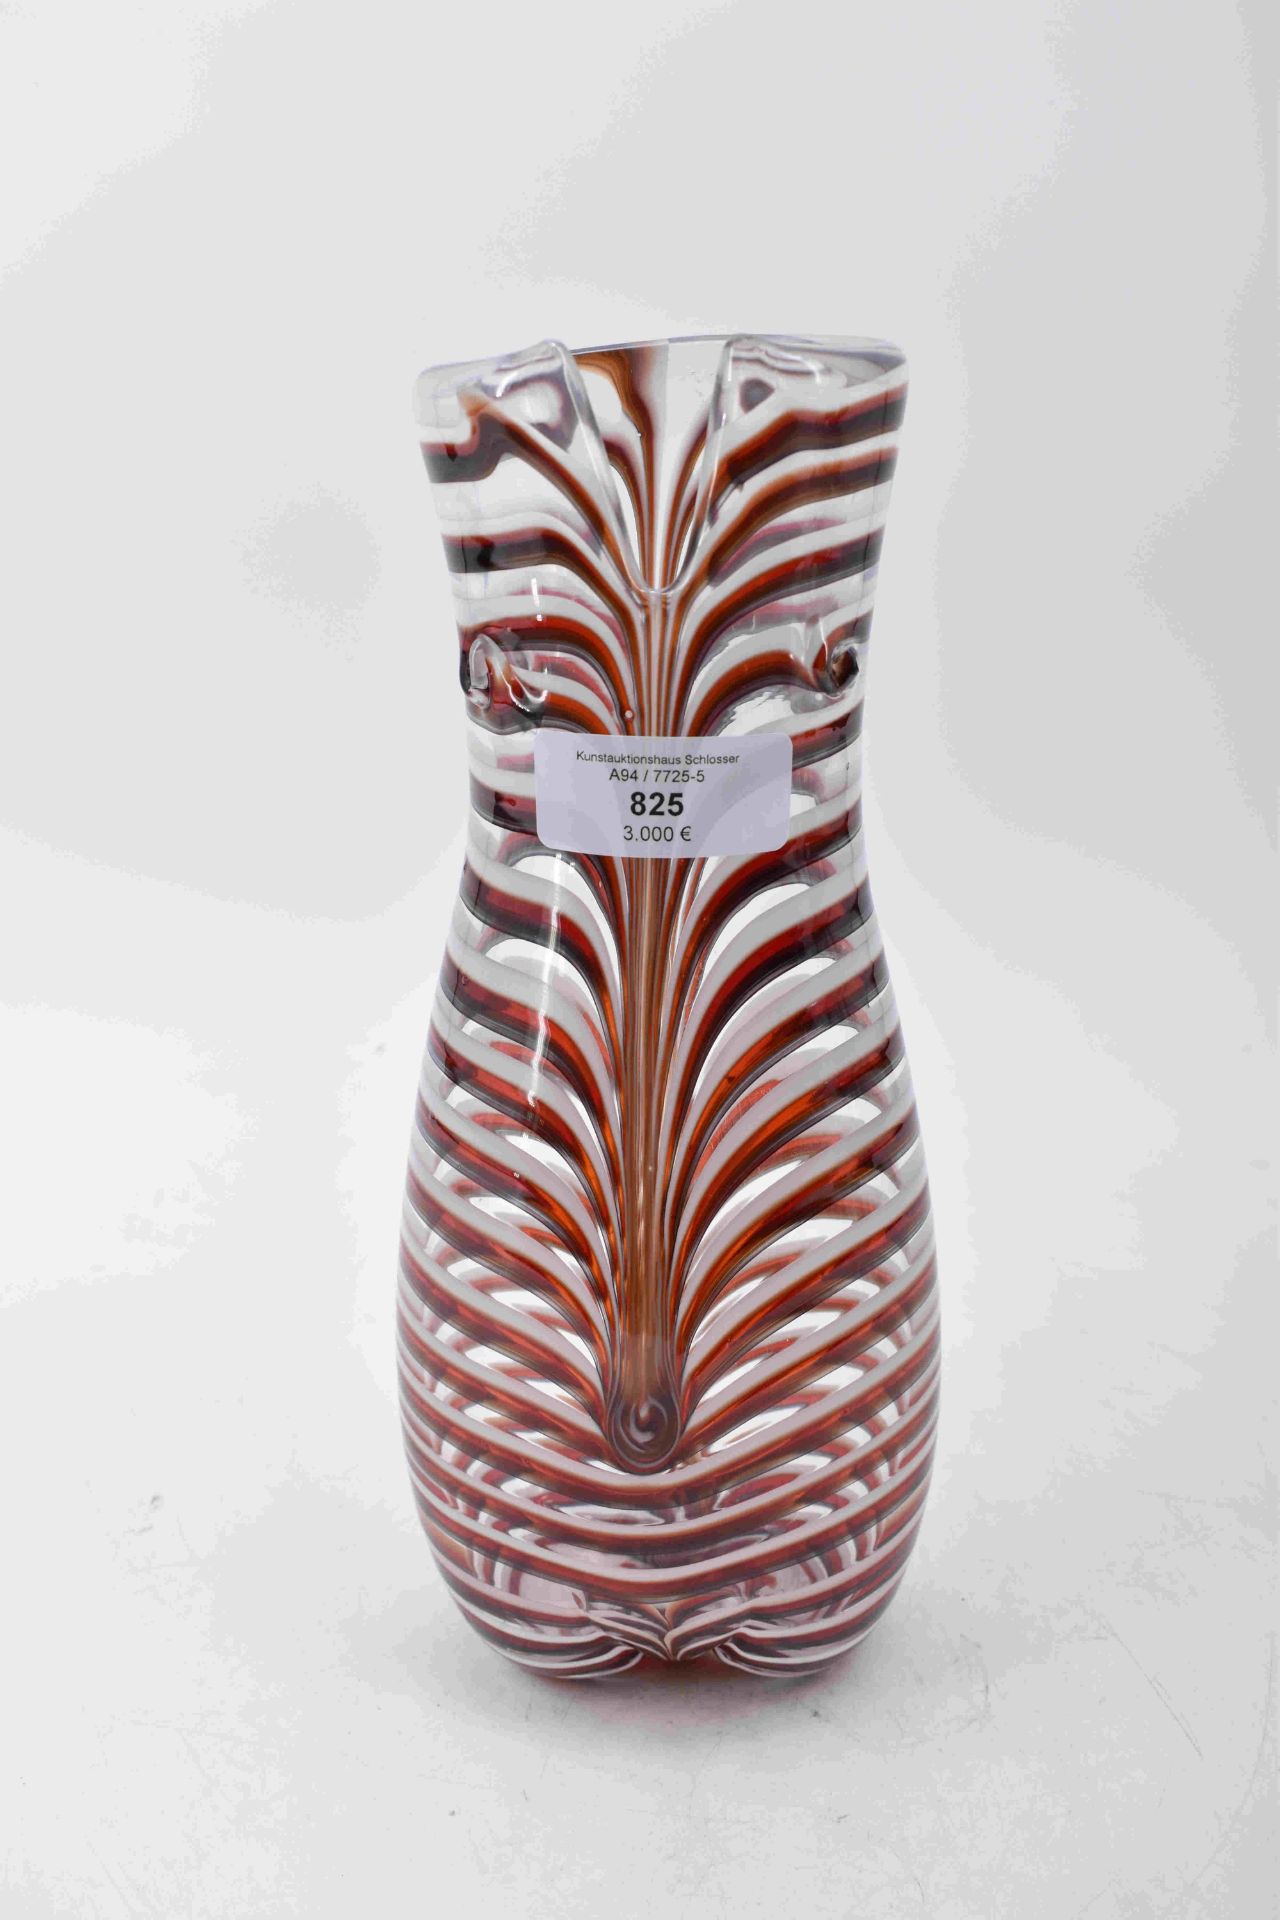 Bianconi, Fulvio: Vase "Bikini" - Image 7 of 10